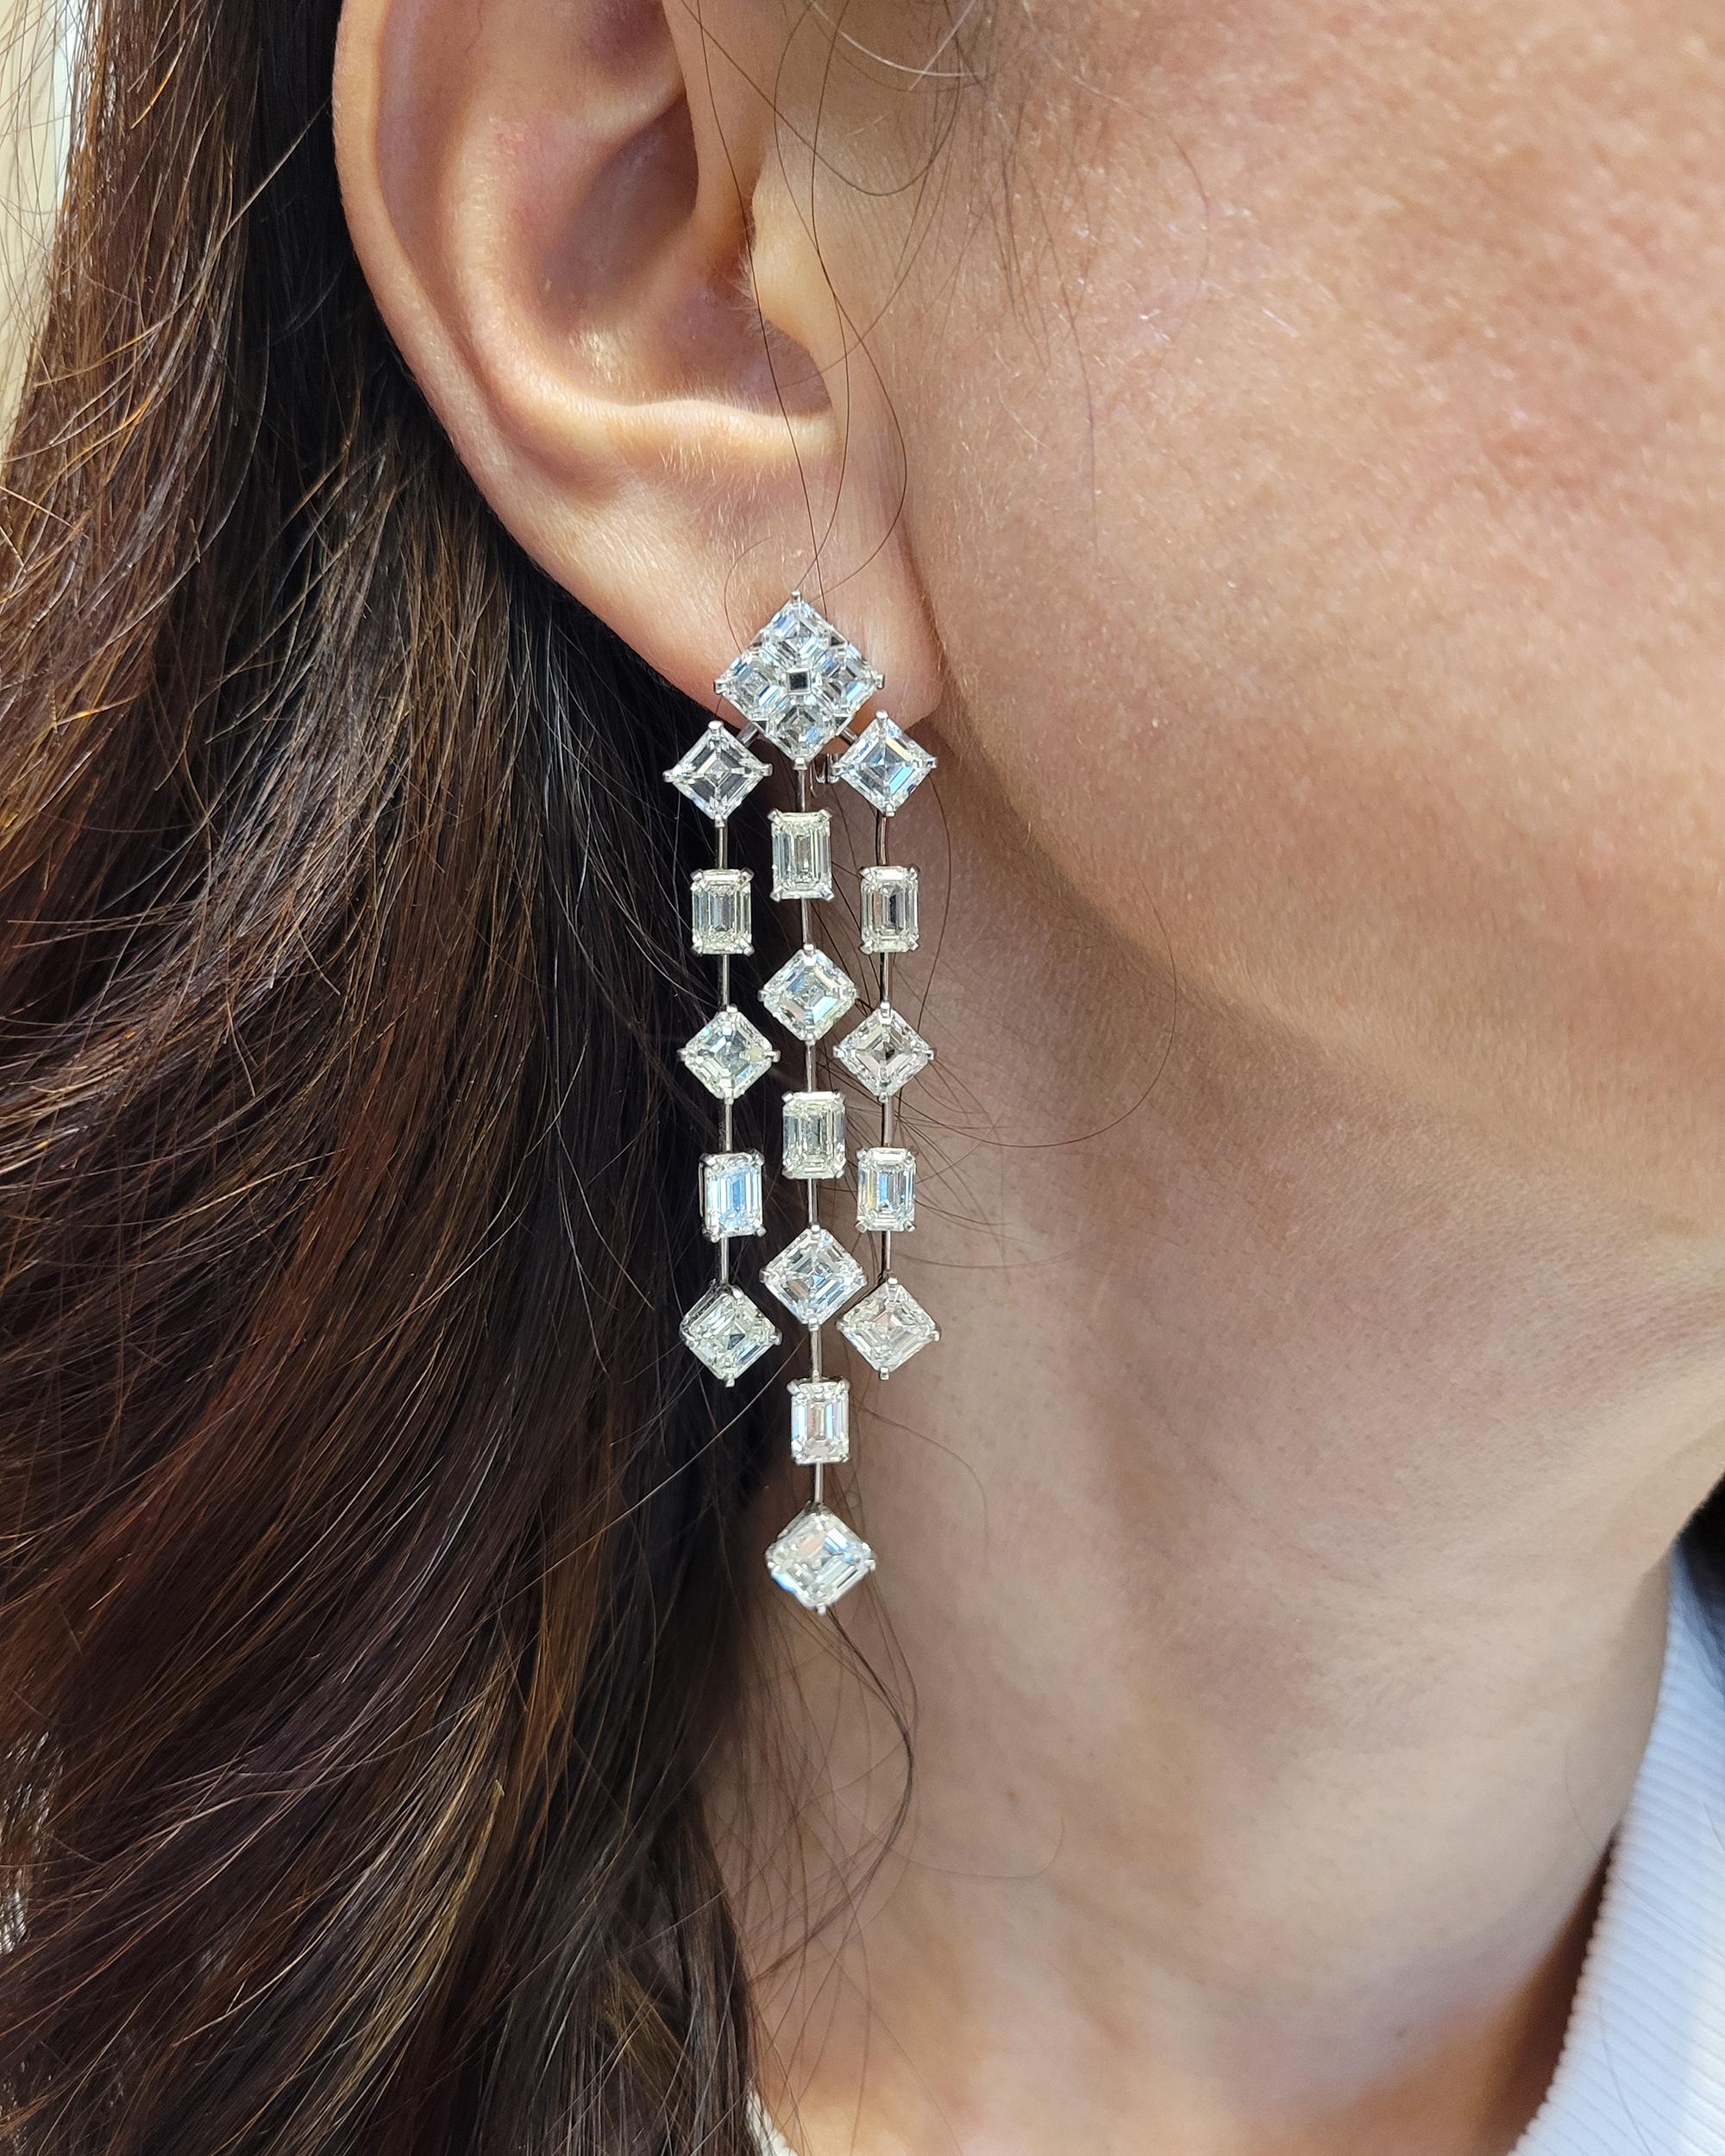 Atemberaubende Kronleuchter-Ohrringe, besetzt mit Diamanten in Mischform, montiert in Platin.

18 Diamanten im Smaragdschliff mit einem Gesamtgewicht von 19,52 Karat - GIA-zertifiziert. Farbe D-E-F-G, Reinheit VS-SI.
14 Diamanten im Smaragdschliff